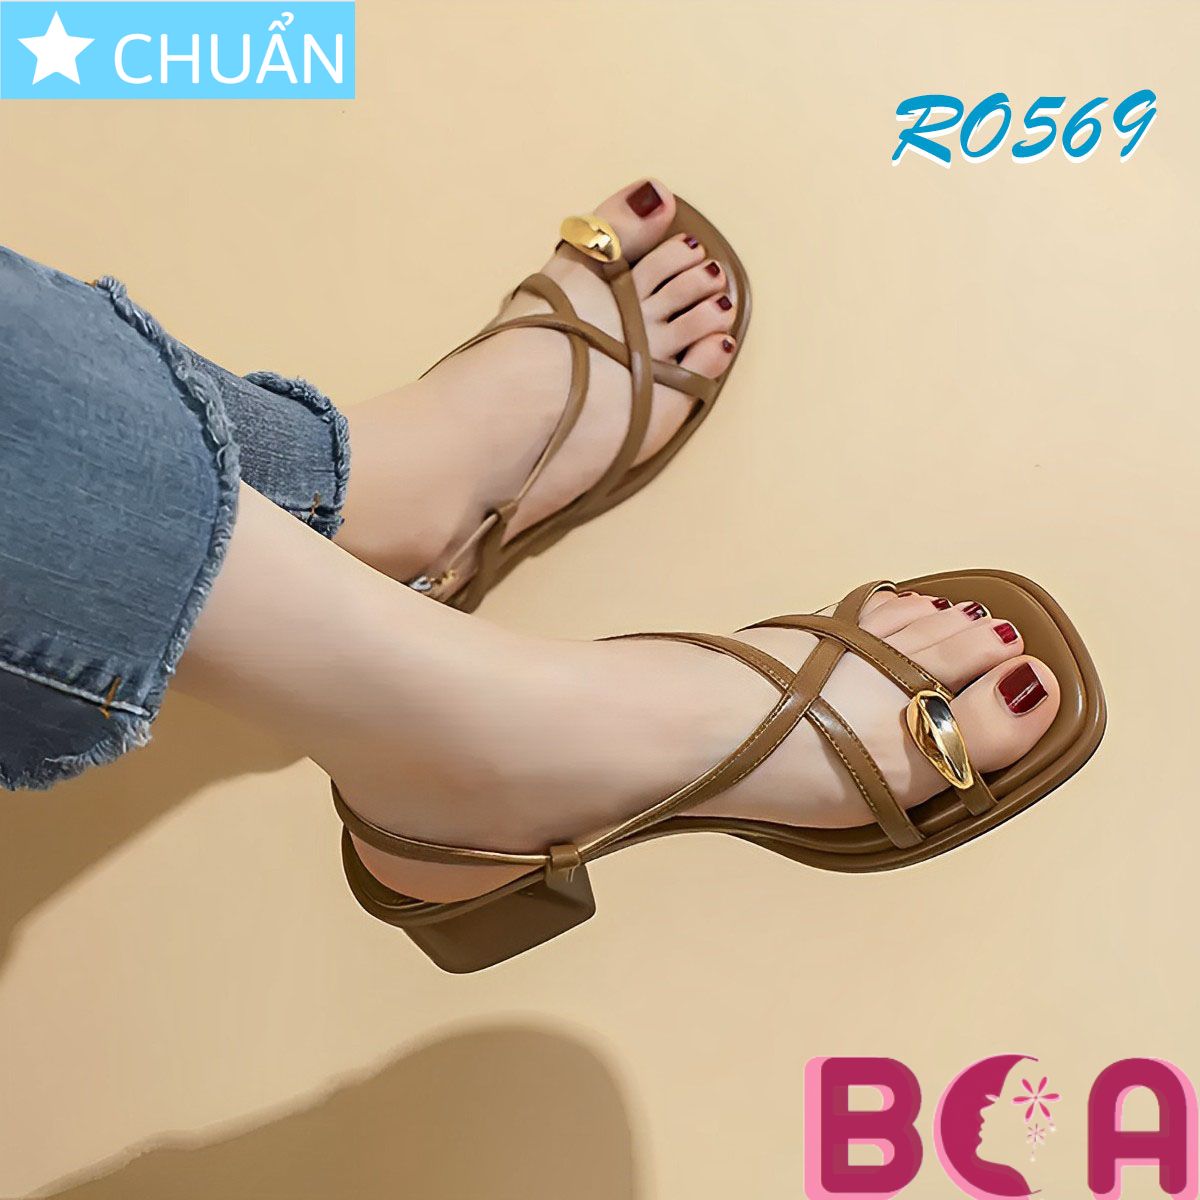 Giày sandal nữ đế thấp 3p RO569 ROSATA tại BCASHOP kết hợp kiểu xỏ ngón có điểm nhấn tại ngón cái độc đáo và thời trang